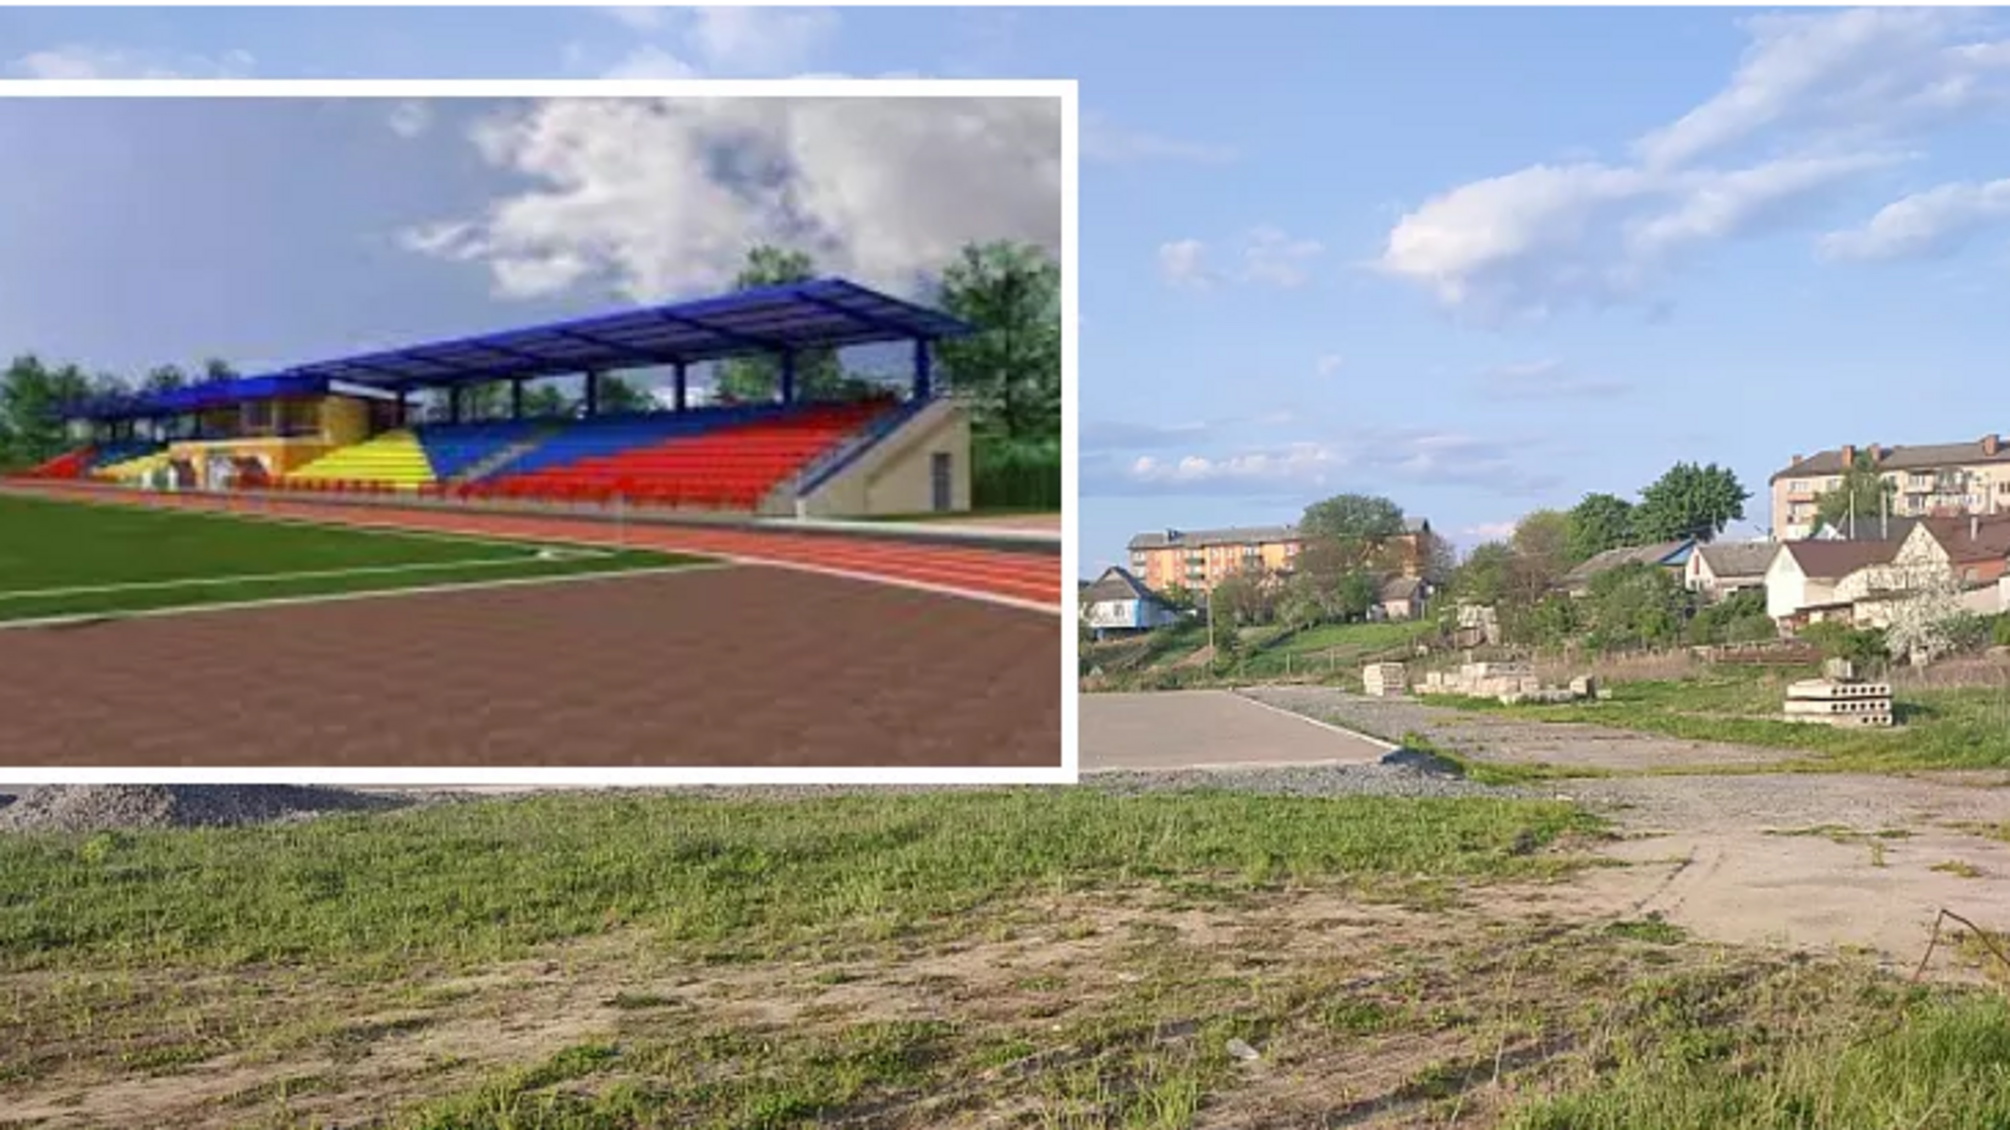 Вместо обещанной реконструкции стадиона подрядчик просто посыпал поле щебнем.